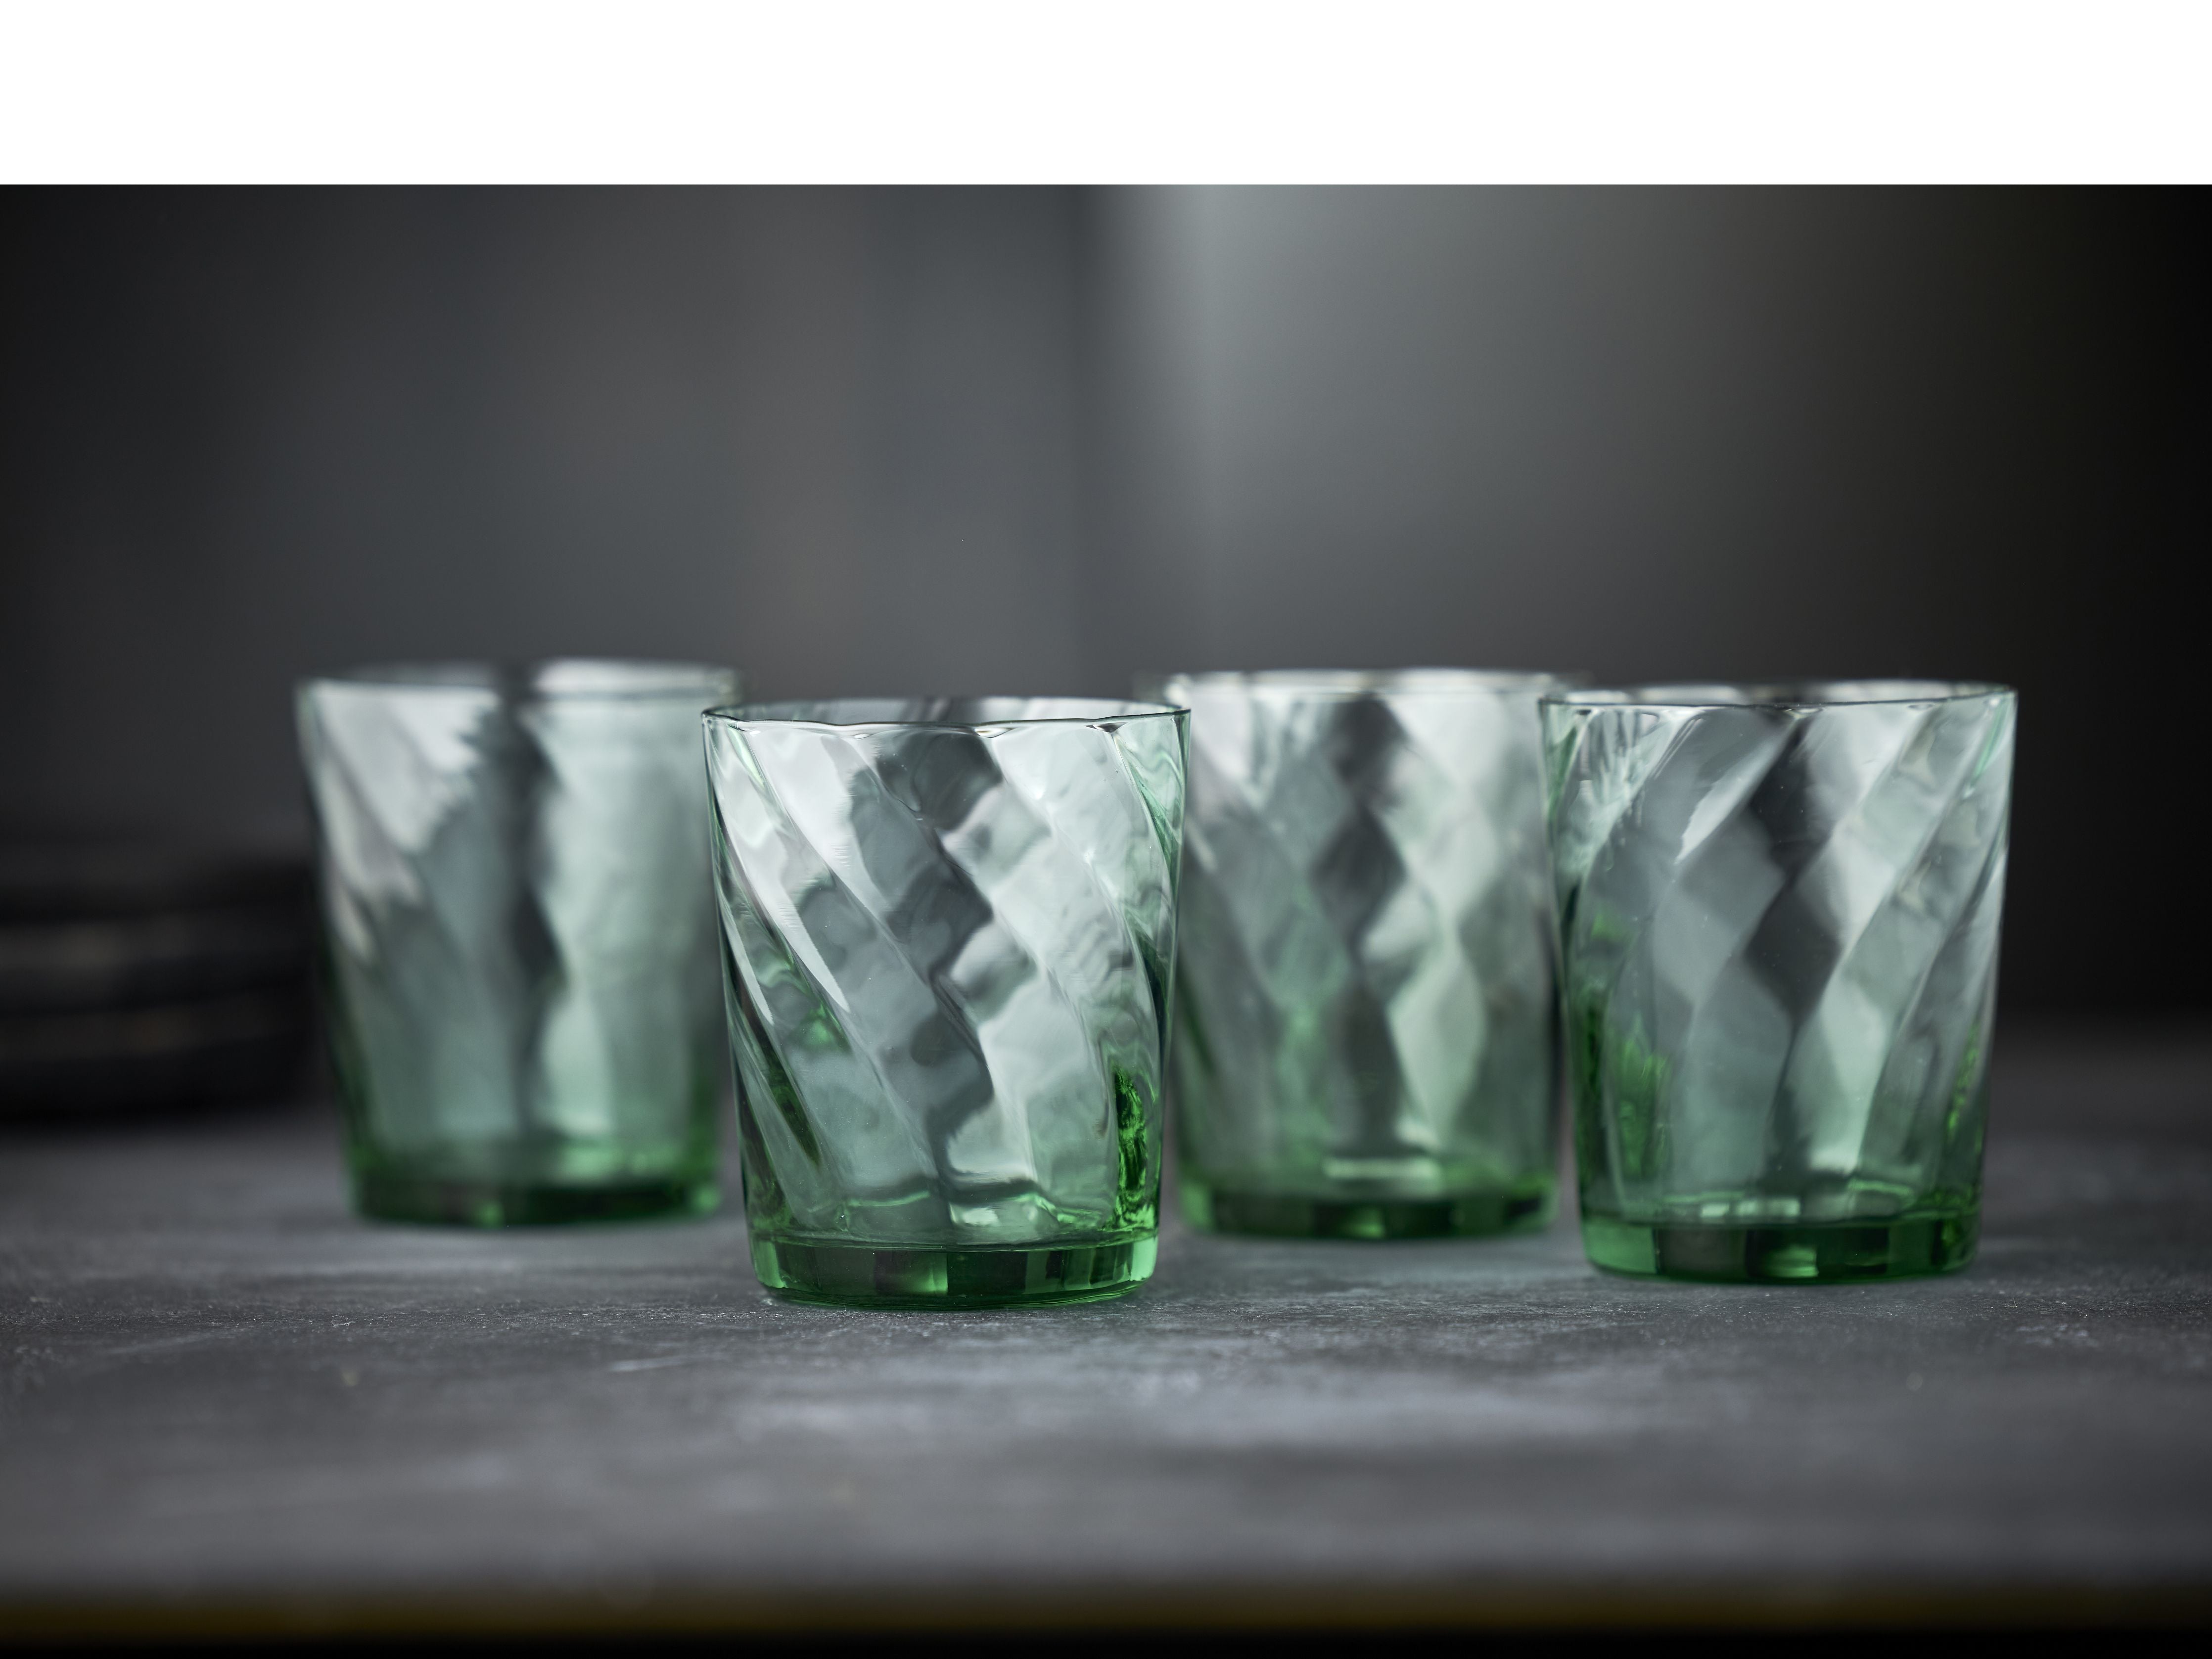 Lyngby Glas Wiena Wasserglas 30 Cl 4 Stcs, grün